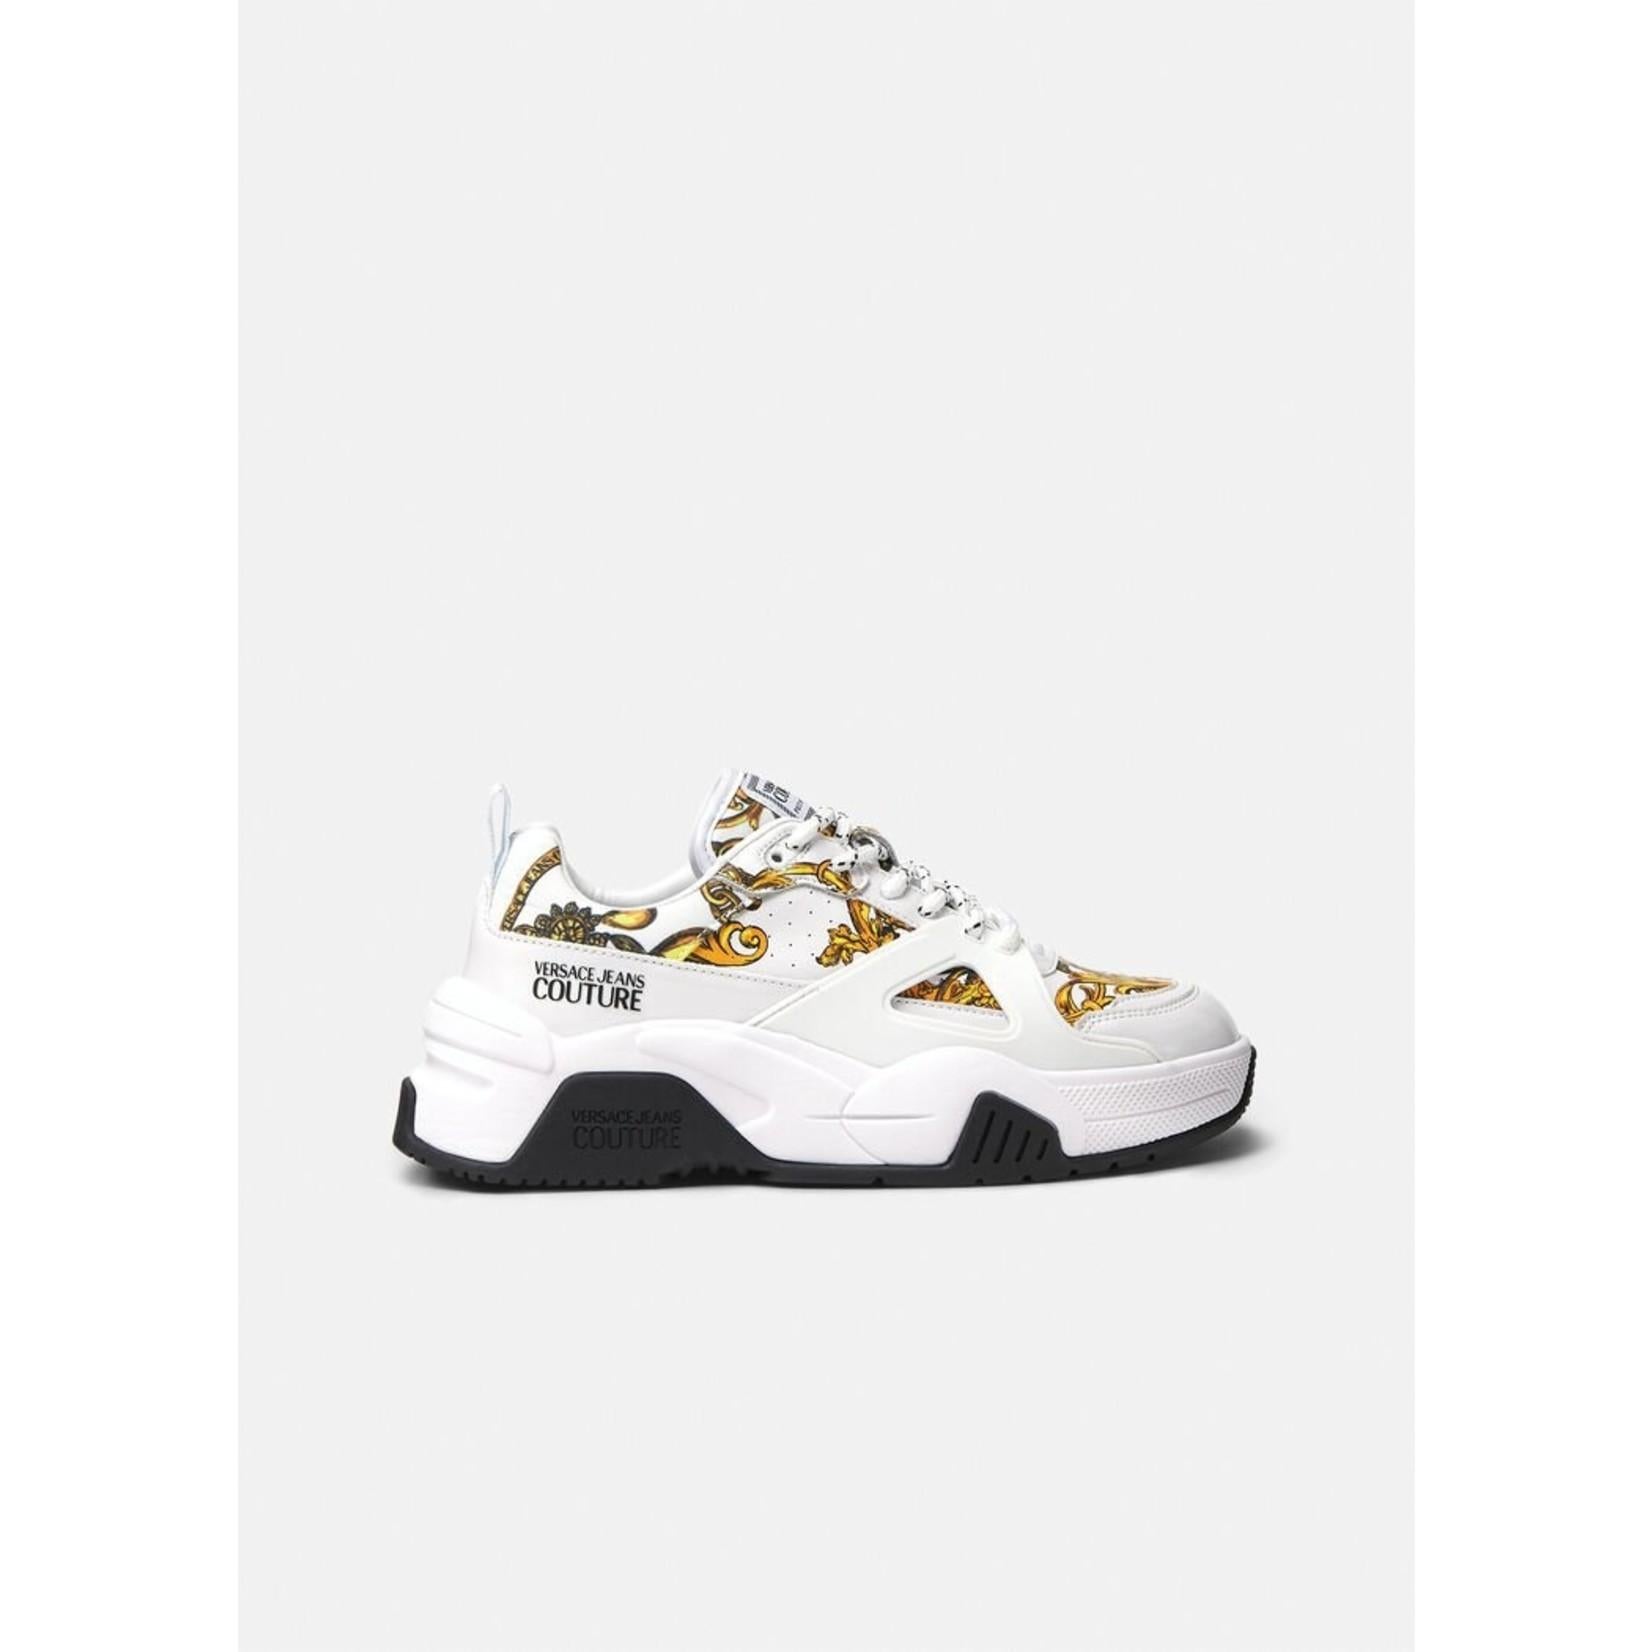 Gris Versace - Baskets « Jeans Couture » blanches avec imprimé baroque et or, taille 36, neuves dans leur boîte en vente